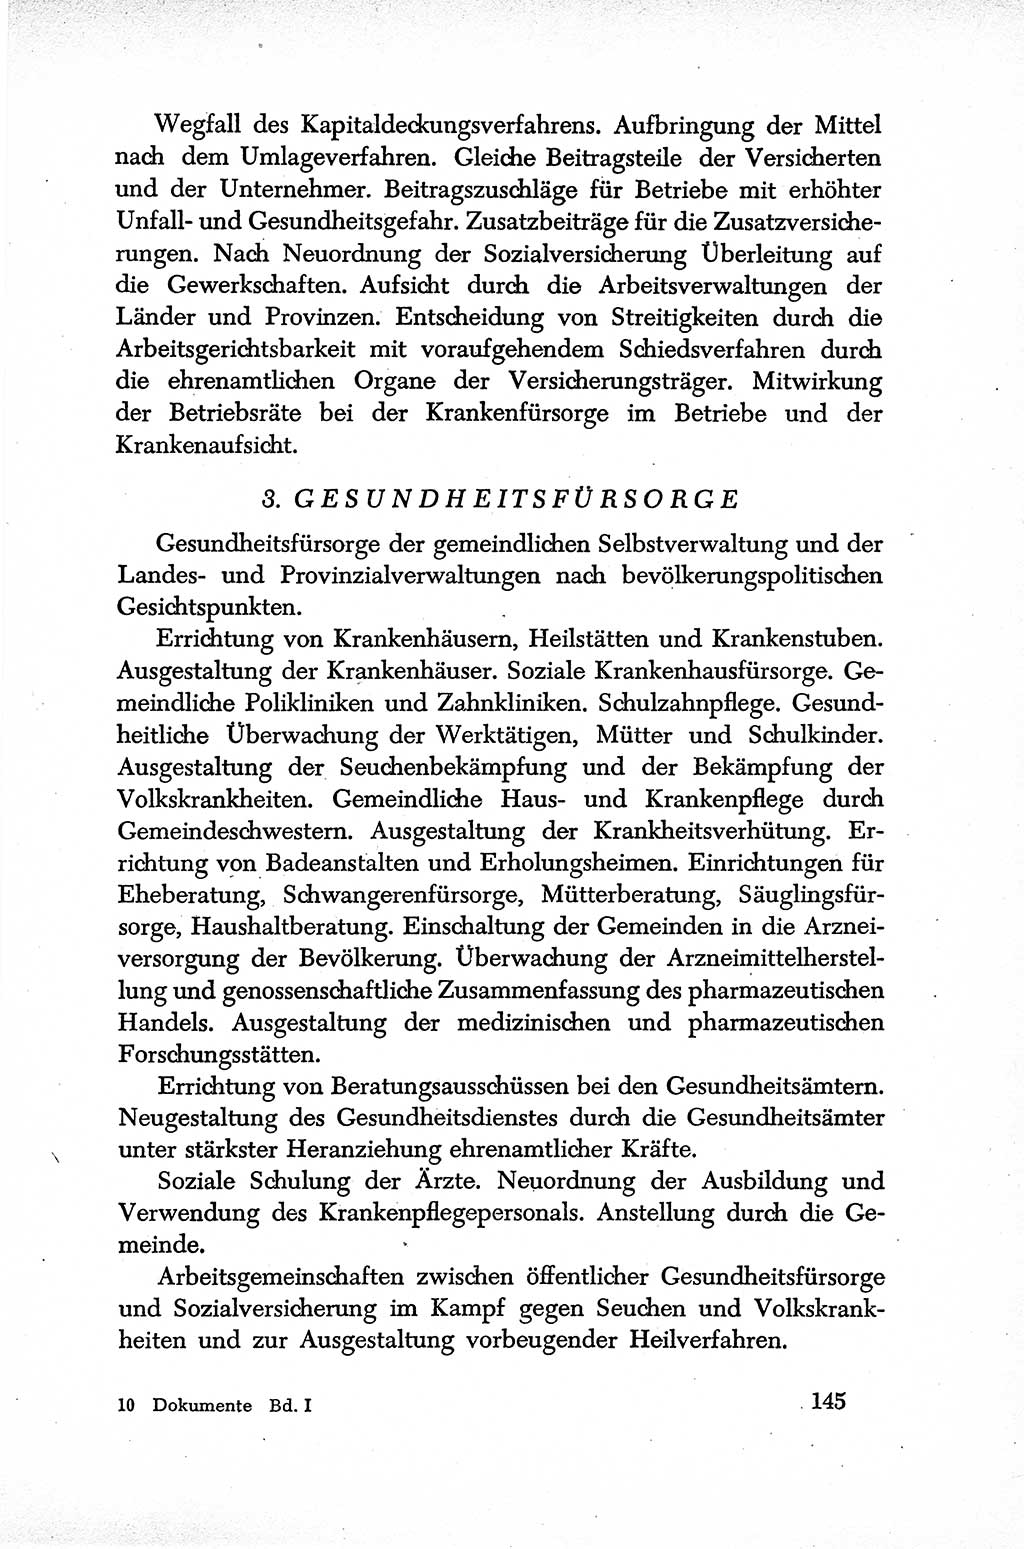 Dokumente der Sozialistischen Einheitspartei Deutschlands (SED) [Sowjetische Besatzungszone (SBZ) Deutschlands] 1946-1948, Seite 145 (Dok. SED SBZ Dtl. 1946-1948, S. 145)